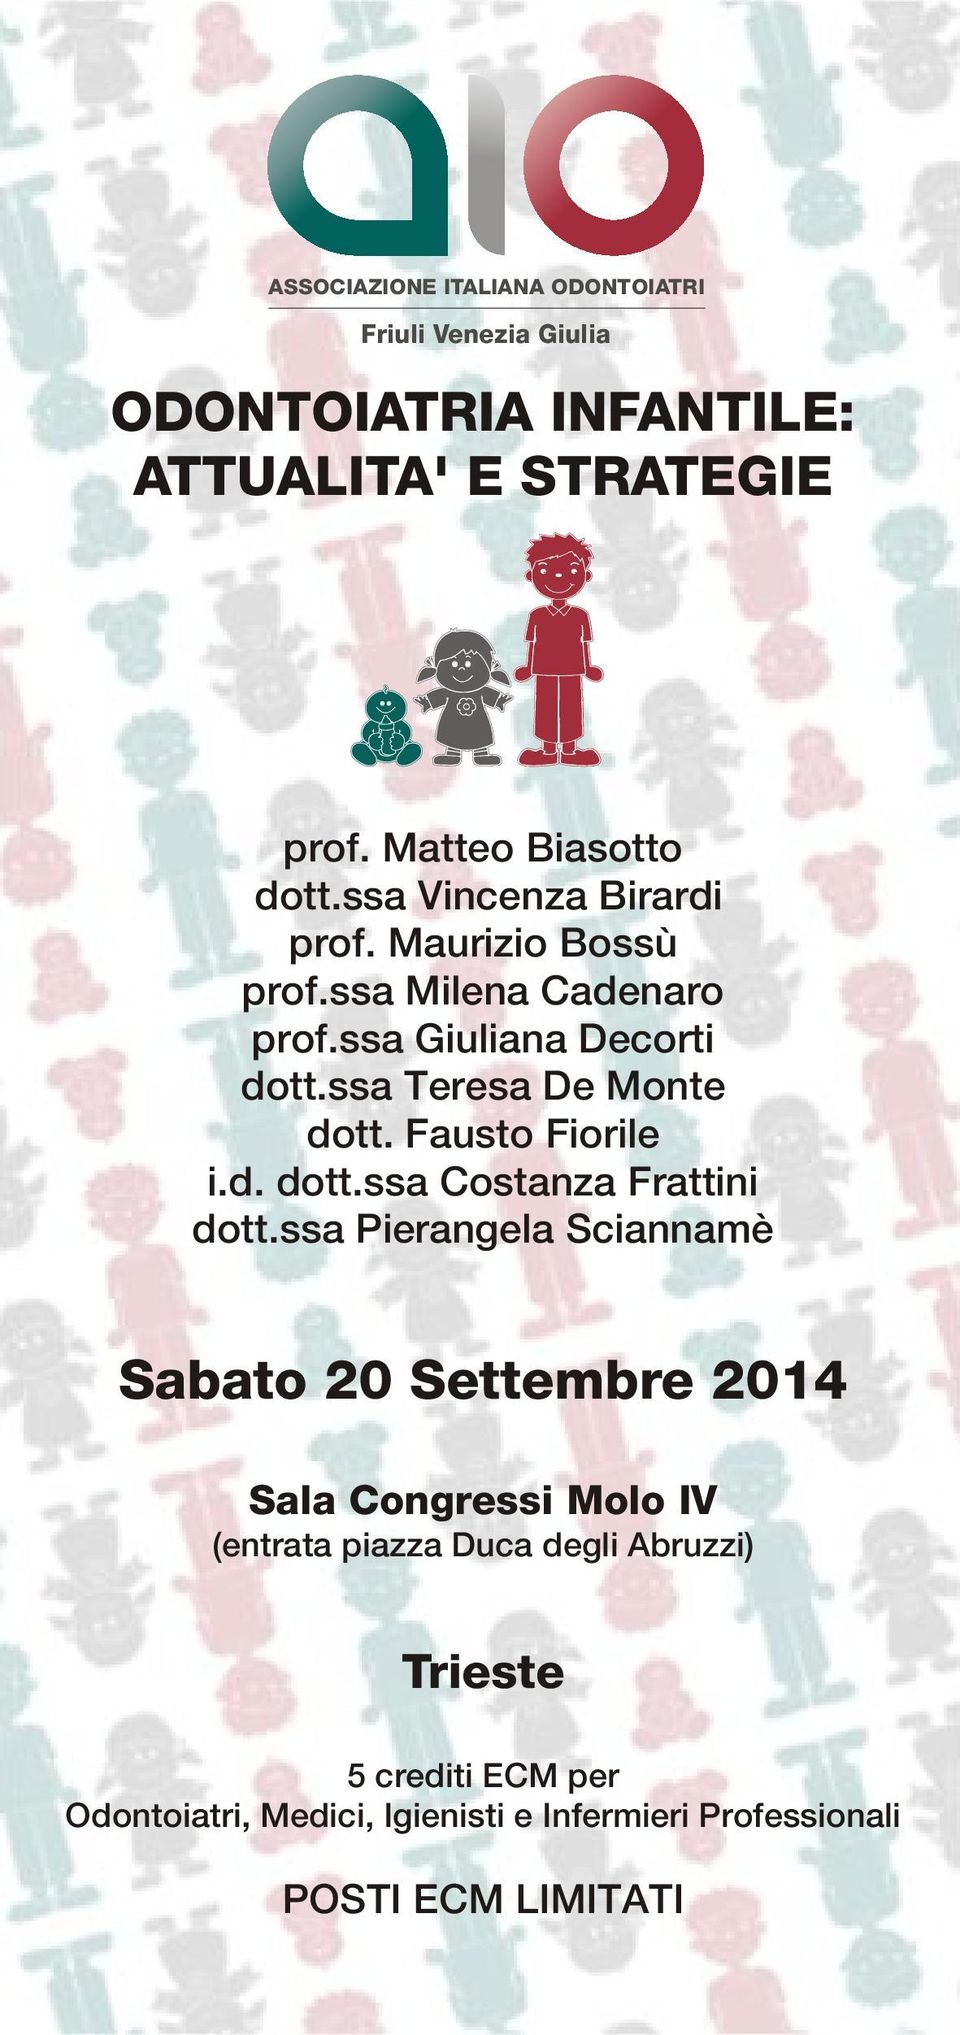 Fausto Fiorile i.d. dott.ssa Costanza Frattini dott.